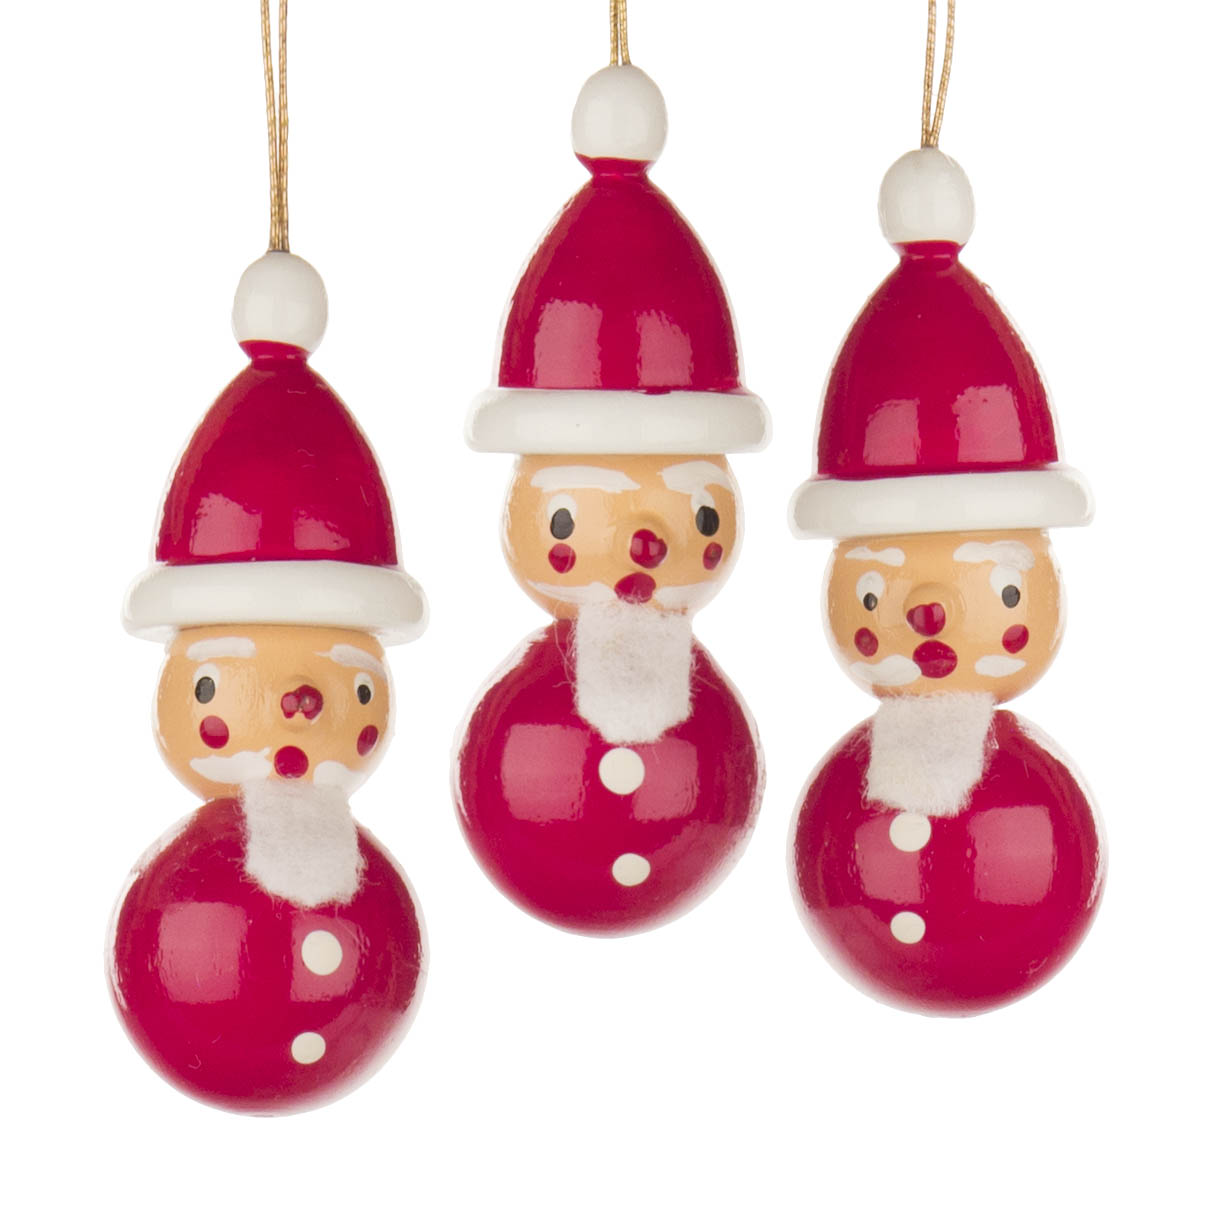 Behang Weihnachtsmann farbig (3) im Dregeno Online Shop günstig kaufen